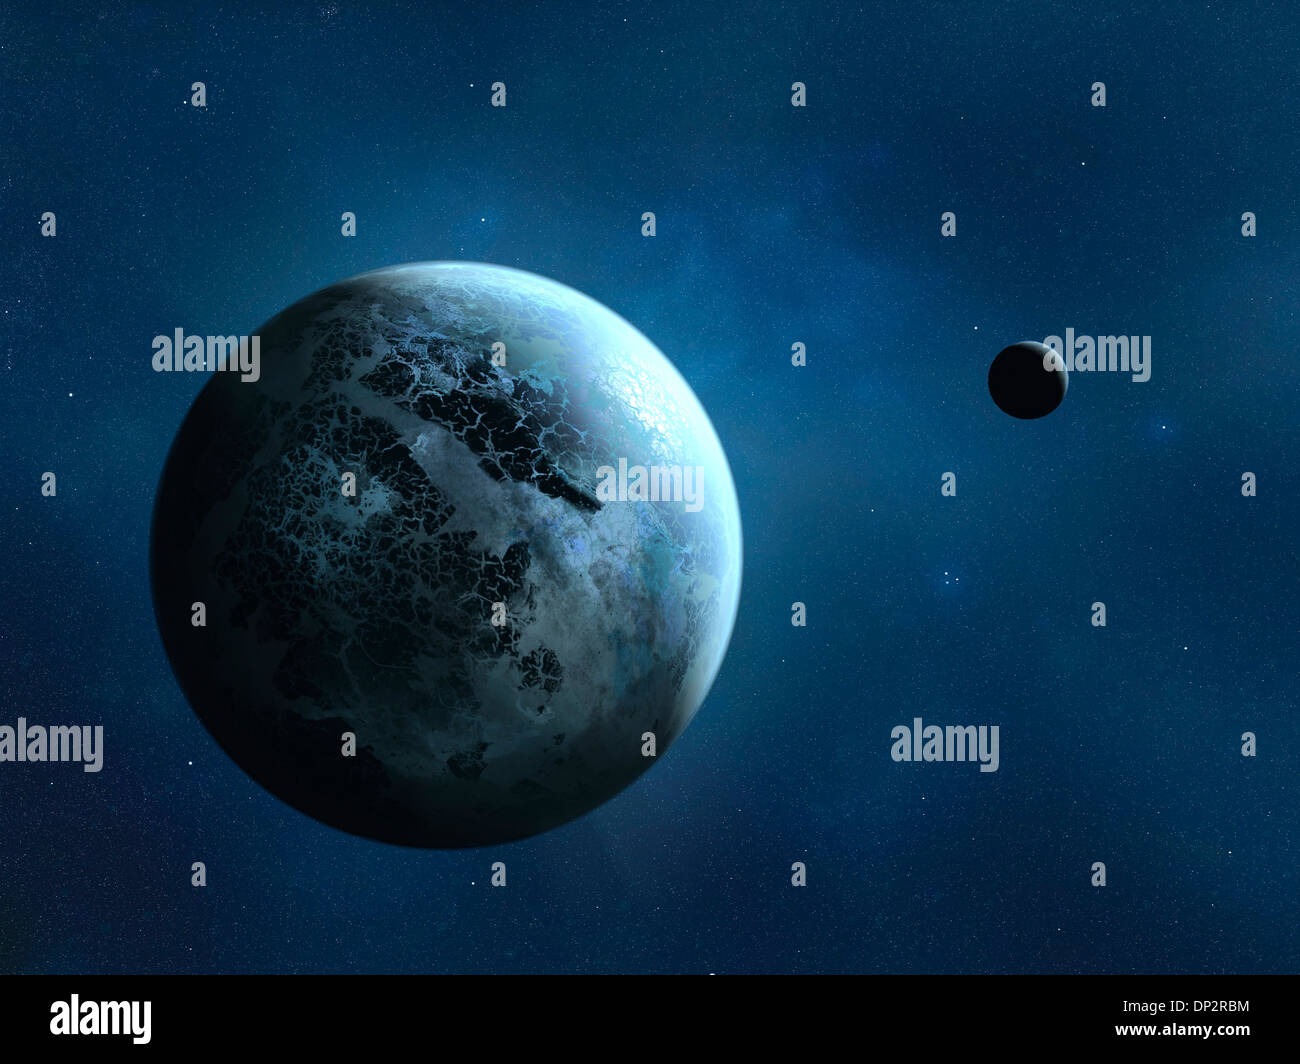 Alien planet, artwork Stock Photo